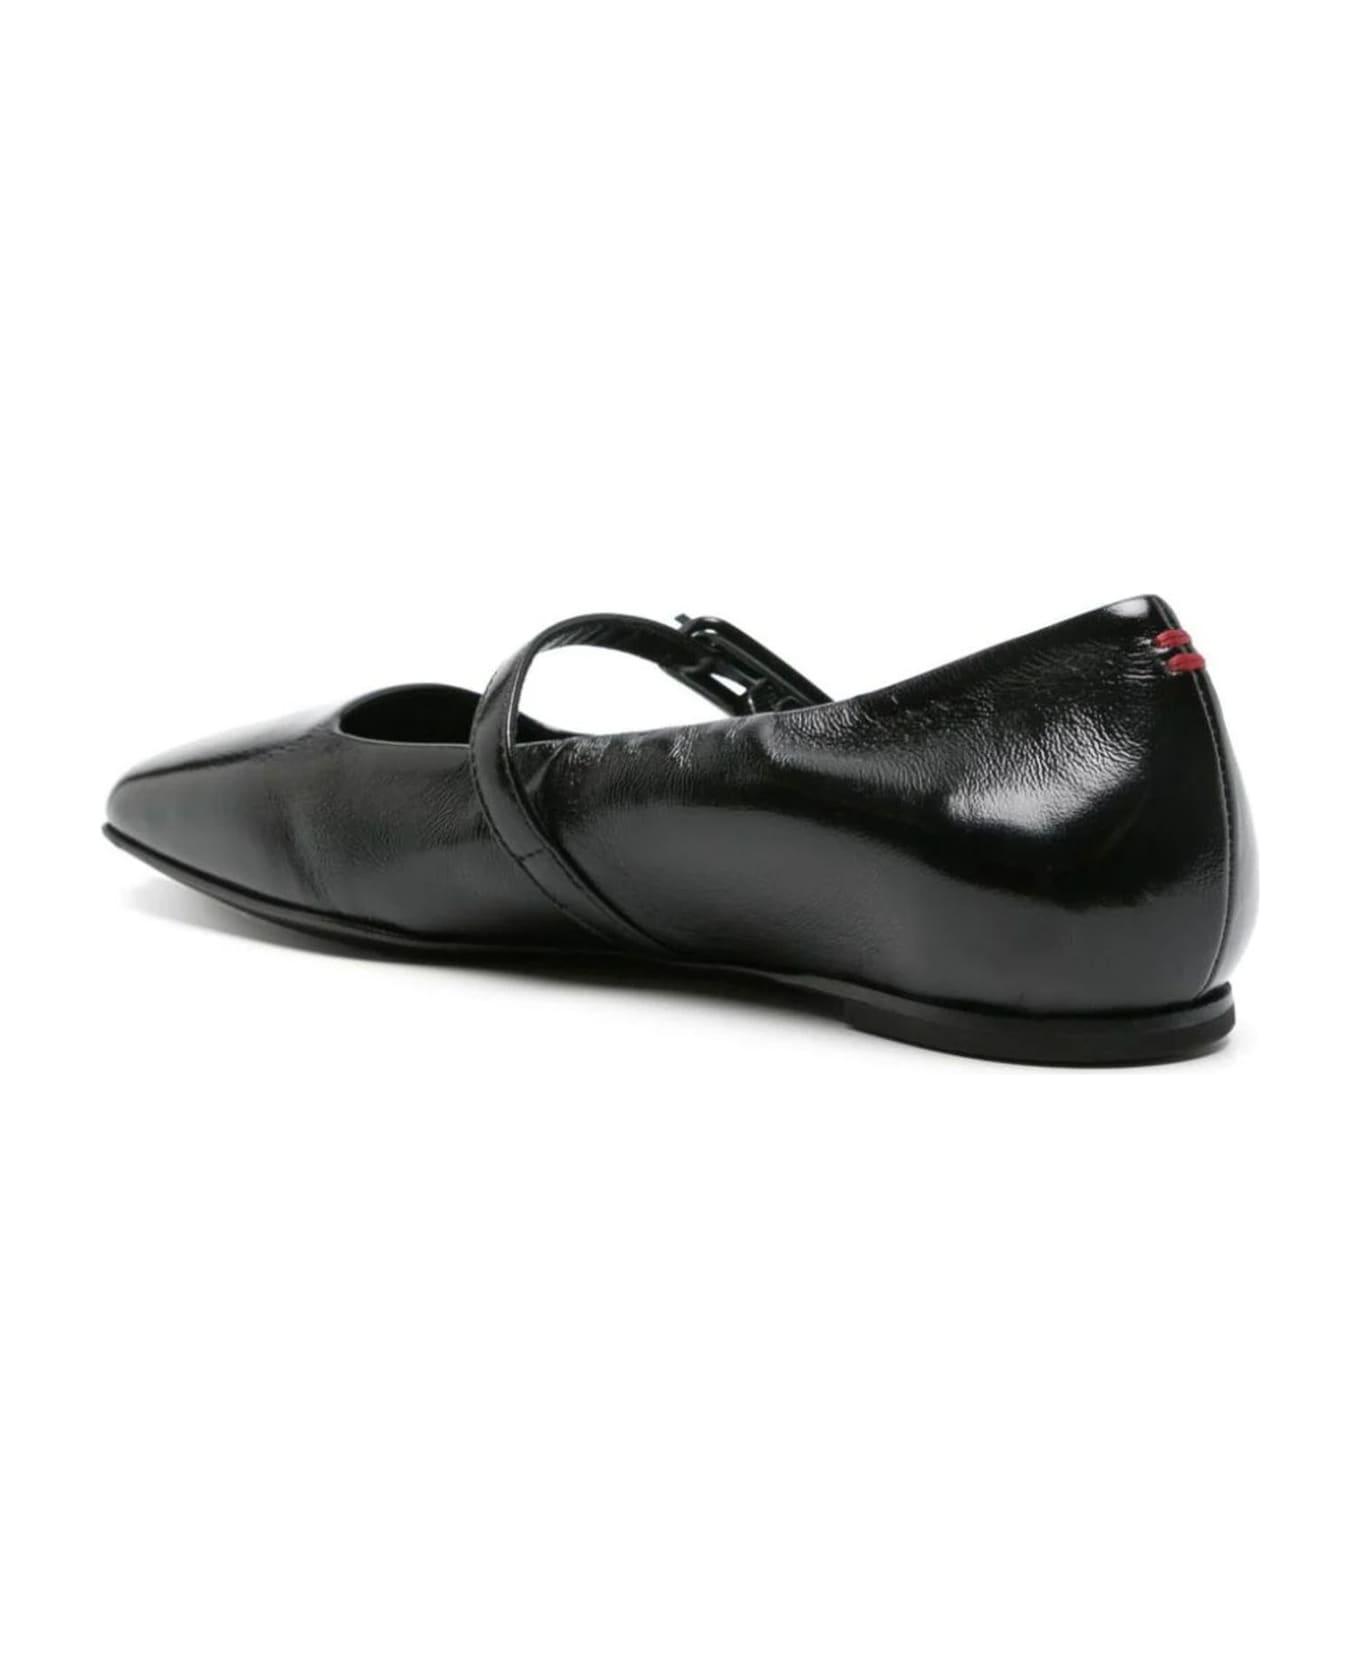 Halmanera Black Page Leather Ballerina Shoes - Black フラットシューズ